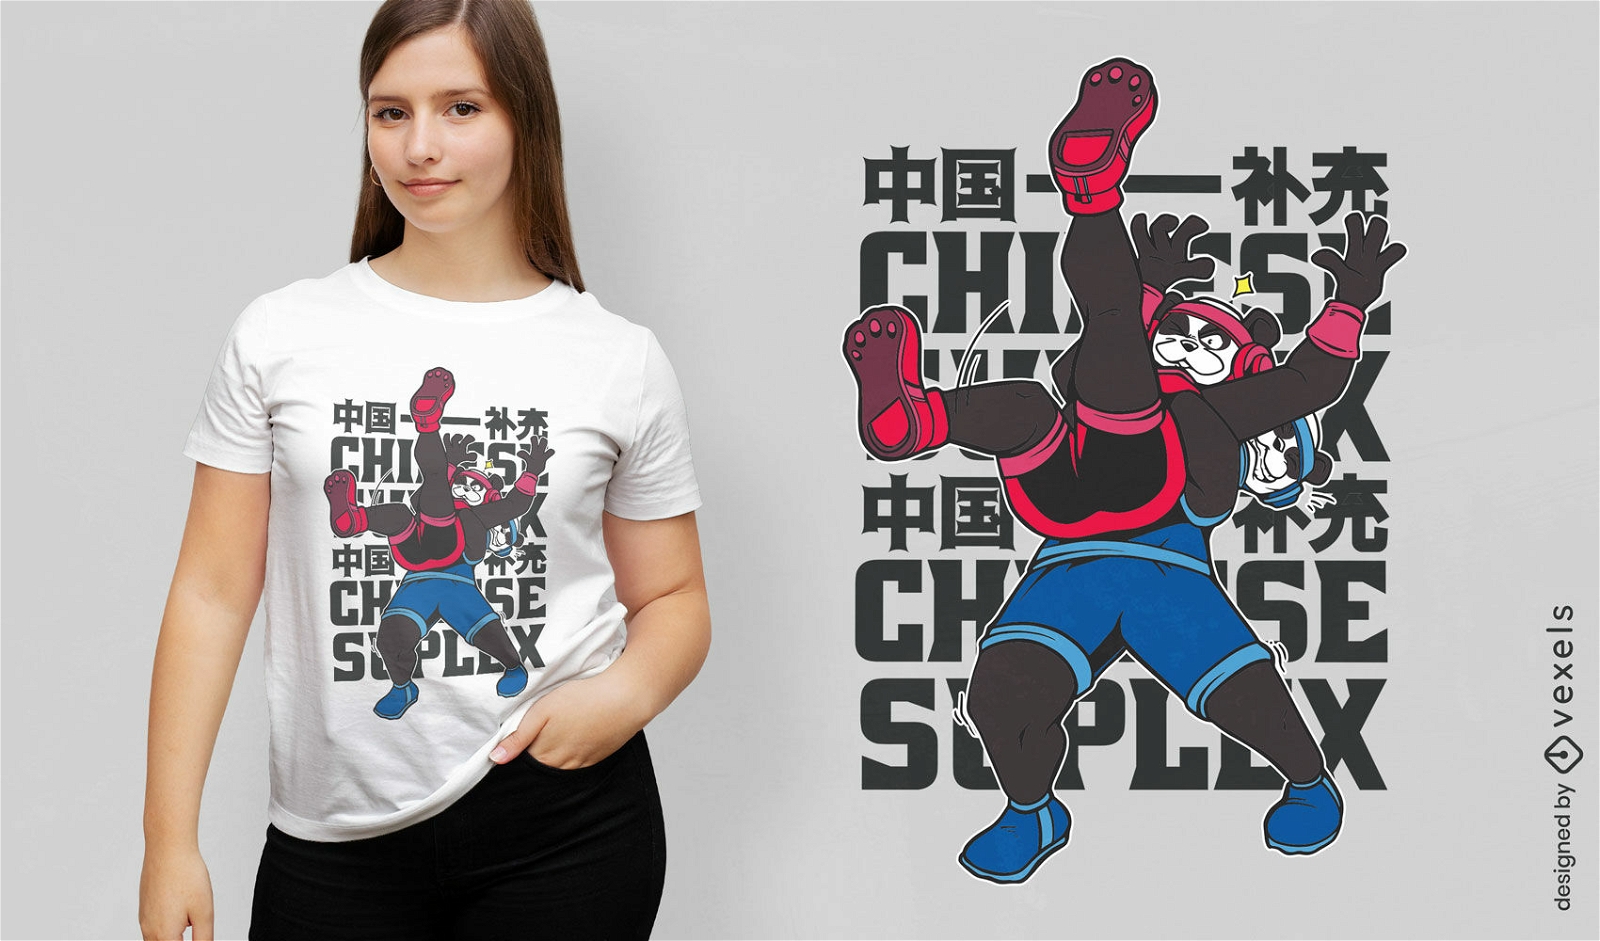 Dise?o de camiseta de luchadores de animales de oso panda.